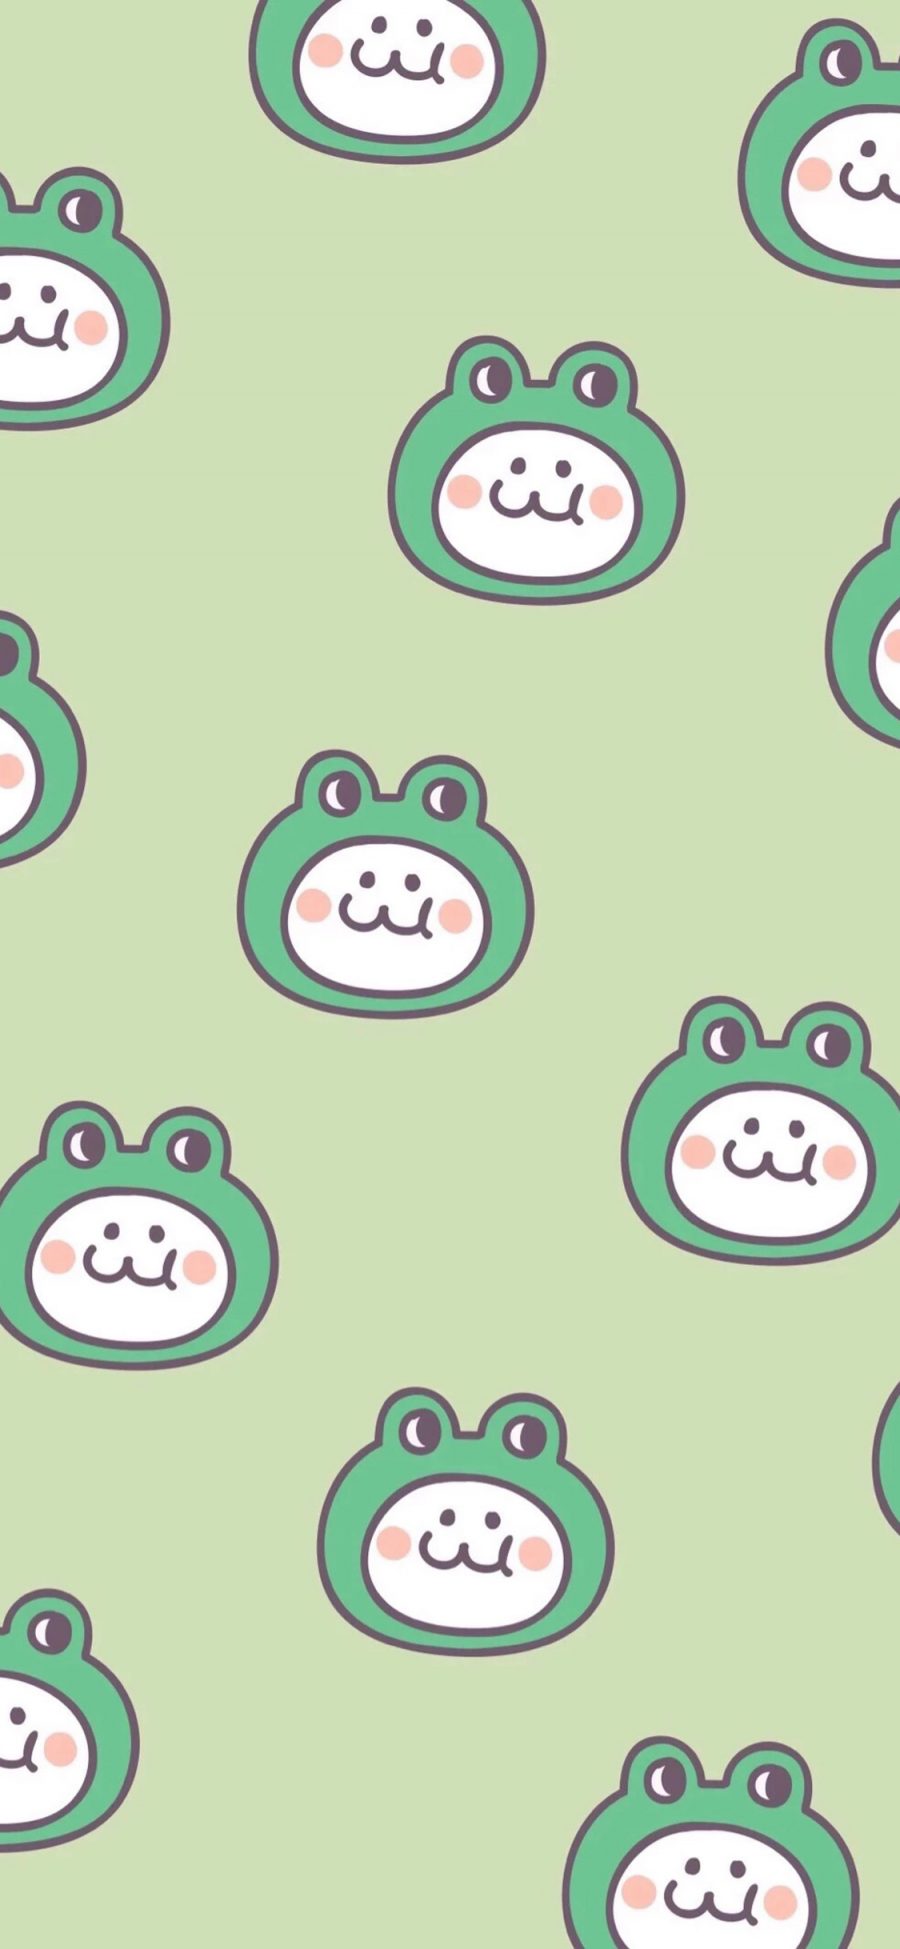 [2436×1125]后田花子 绿色 可爱 平铺 青蛙 苹果手机动漫壁纸图片